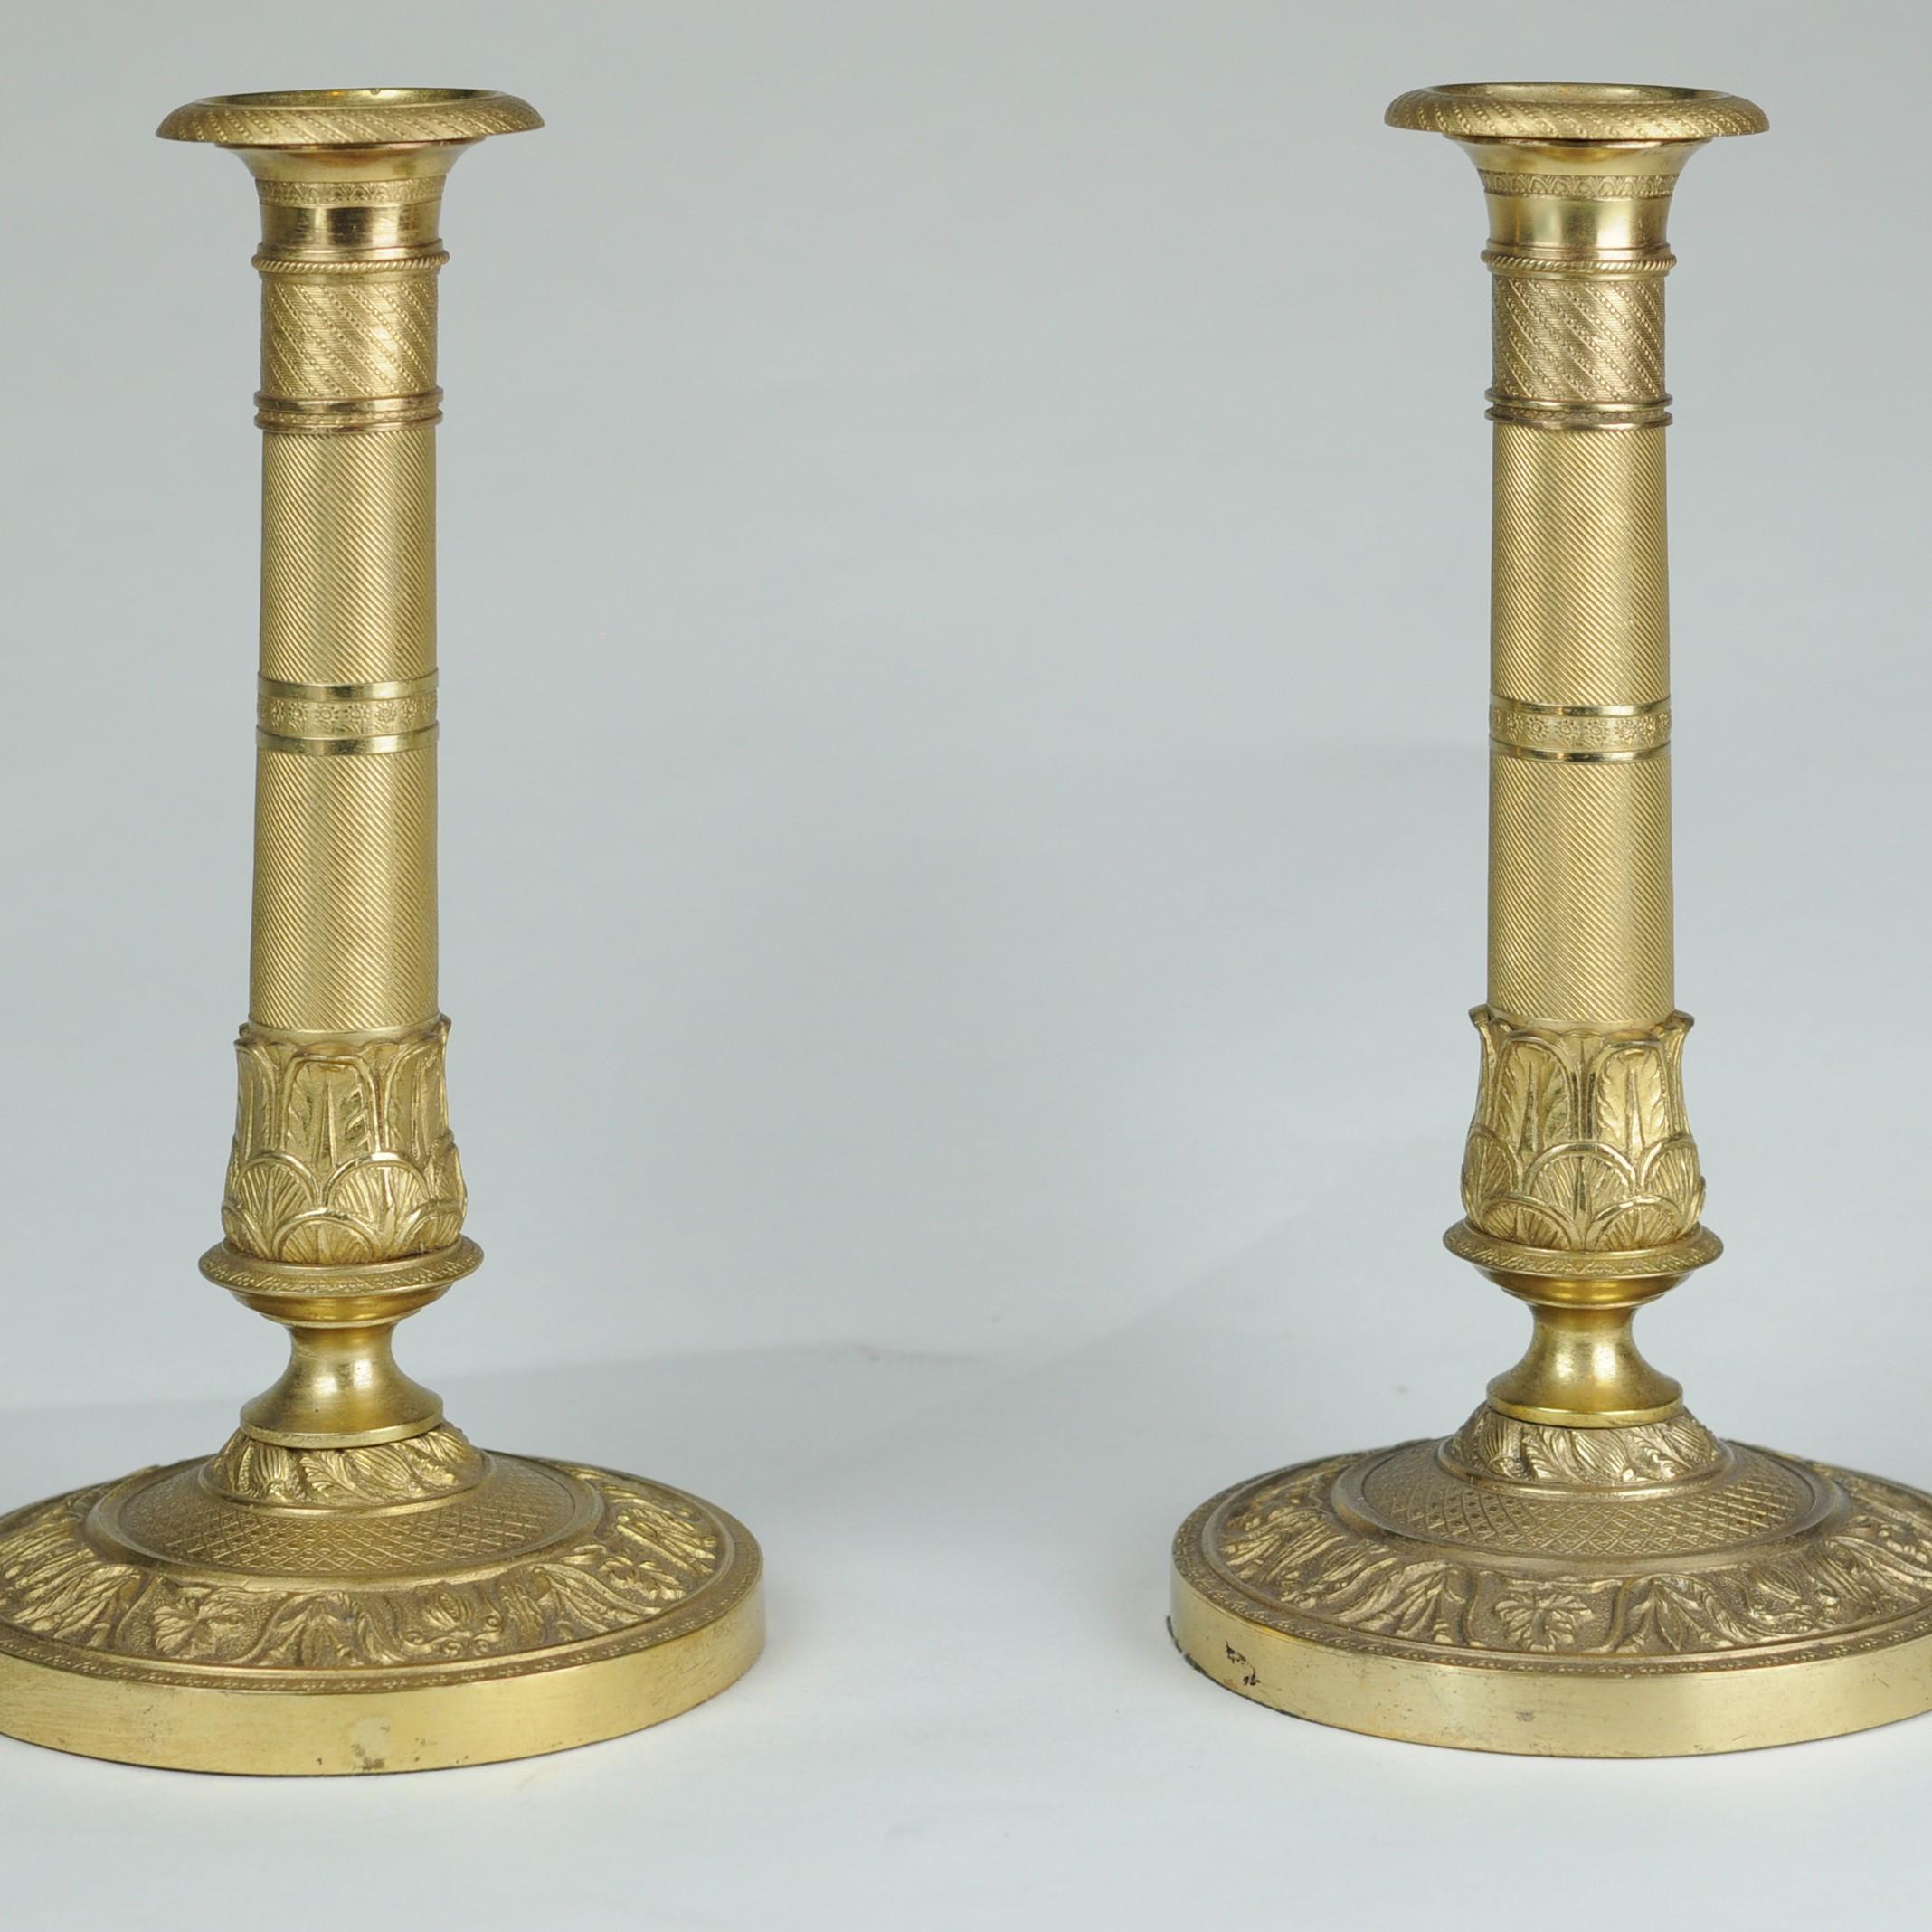 Ein feines Paar Ormolu-Kerzenhalter aus dem frühen 19. Jahrhundert, die durchgehend mit knackigen Motordrehungen verziert sind und die originalen Wandhalterungen beibehalten. Ungewöhnlich mit beschwerten Sockeln, was möglicherweise auf eine